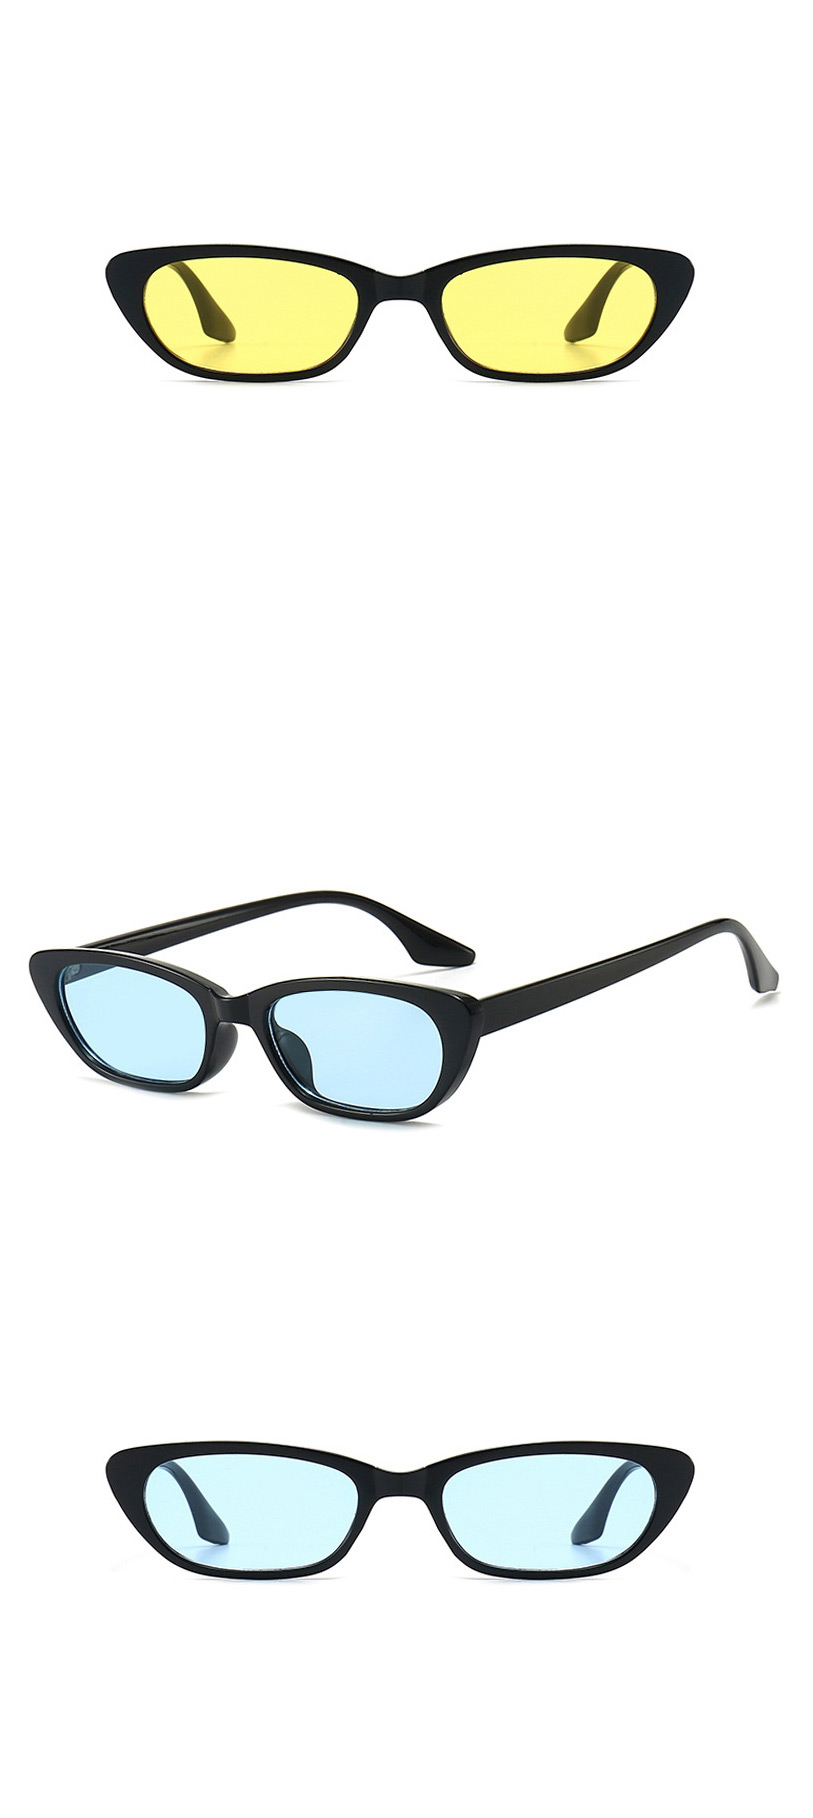 Fashion Bright Black All Gray Small Frame Sunglasses,Women Sunglasses